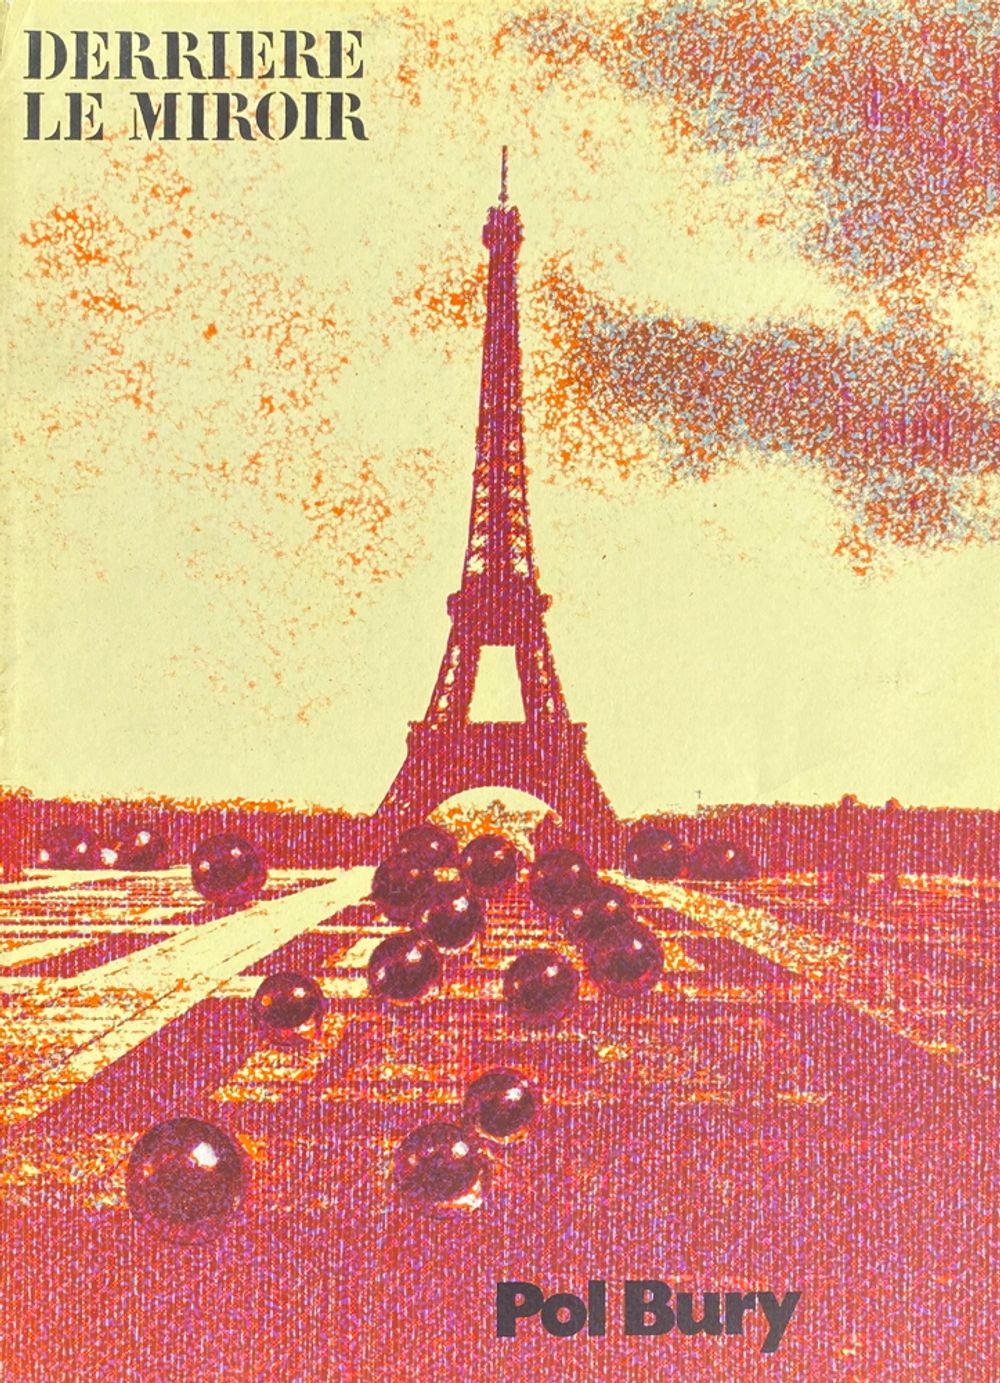 DLM191 - La Tour Eiffel